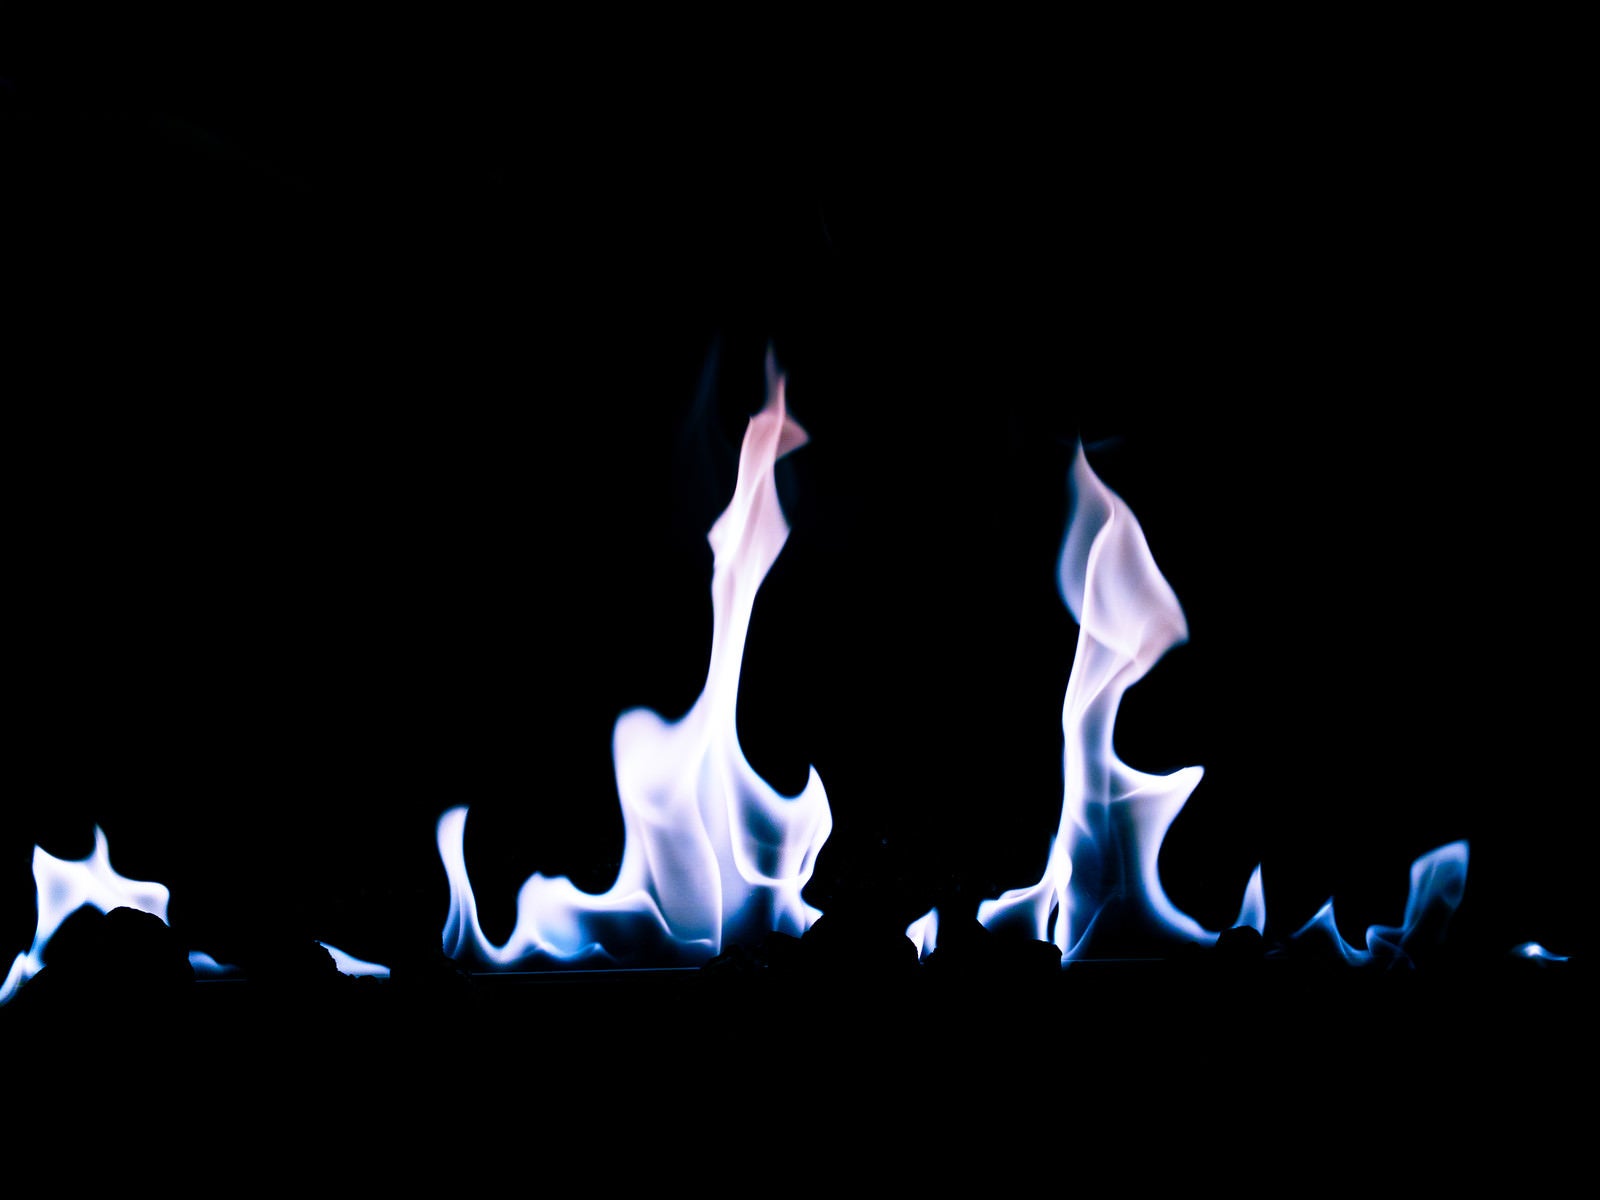 「下からガスの炎が燃える」の写真